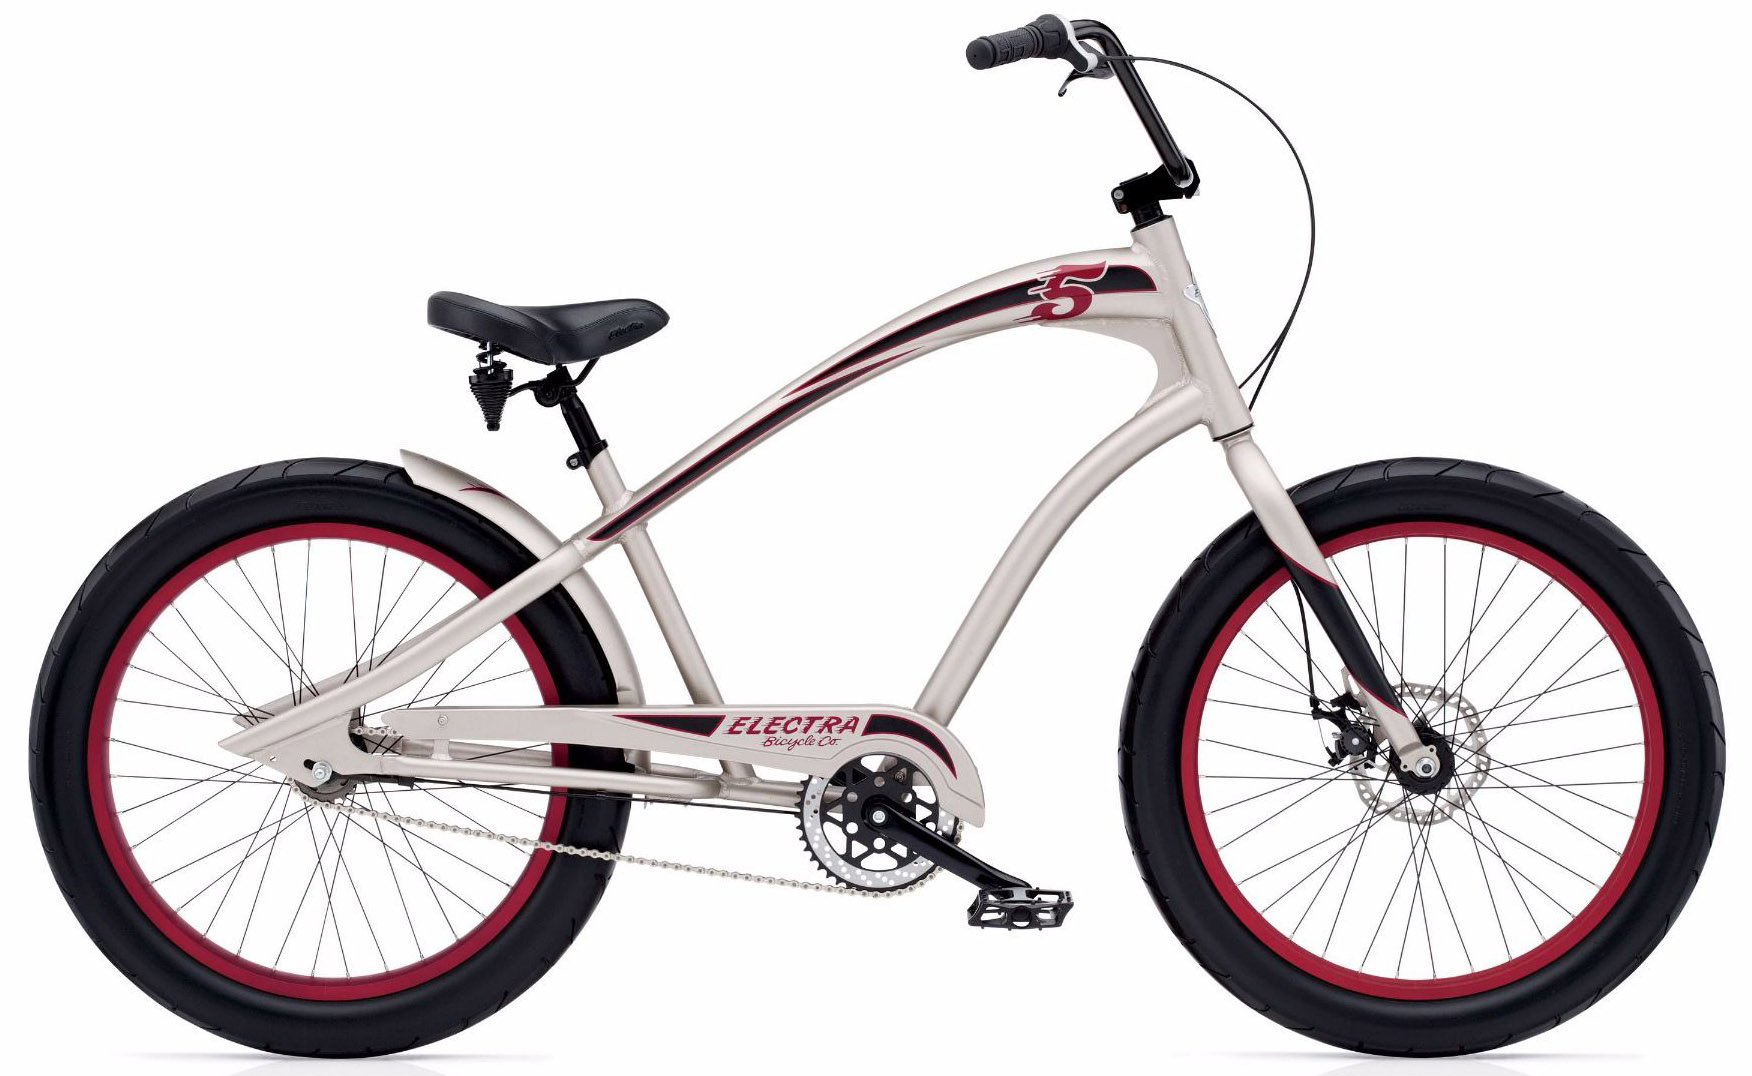  Отзывы о Городском велосипеде Electra Fast 5 3i 2020